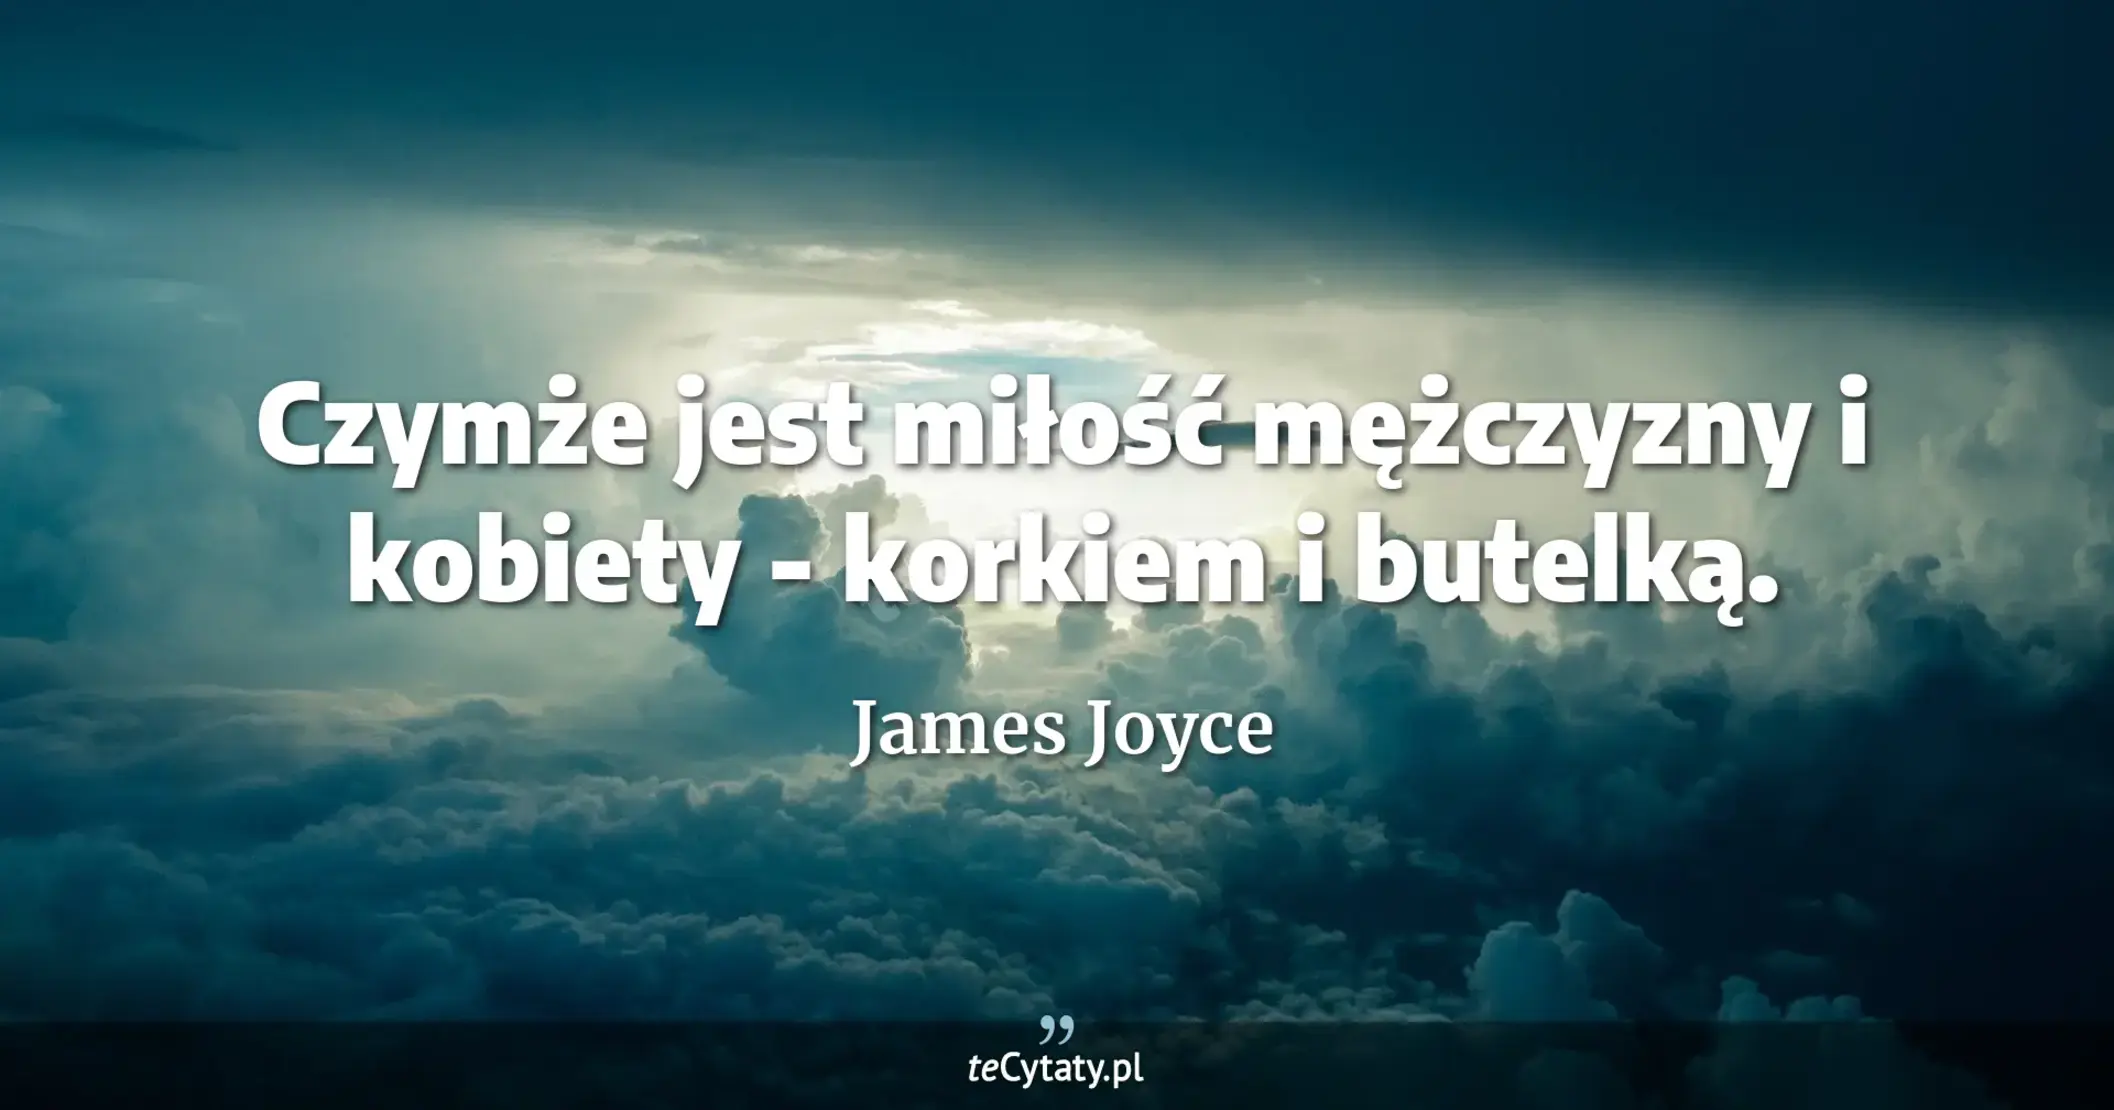 Czymże jest miłość mężczyzny i kobiety - korkiem i butelką. - James Joyce